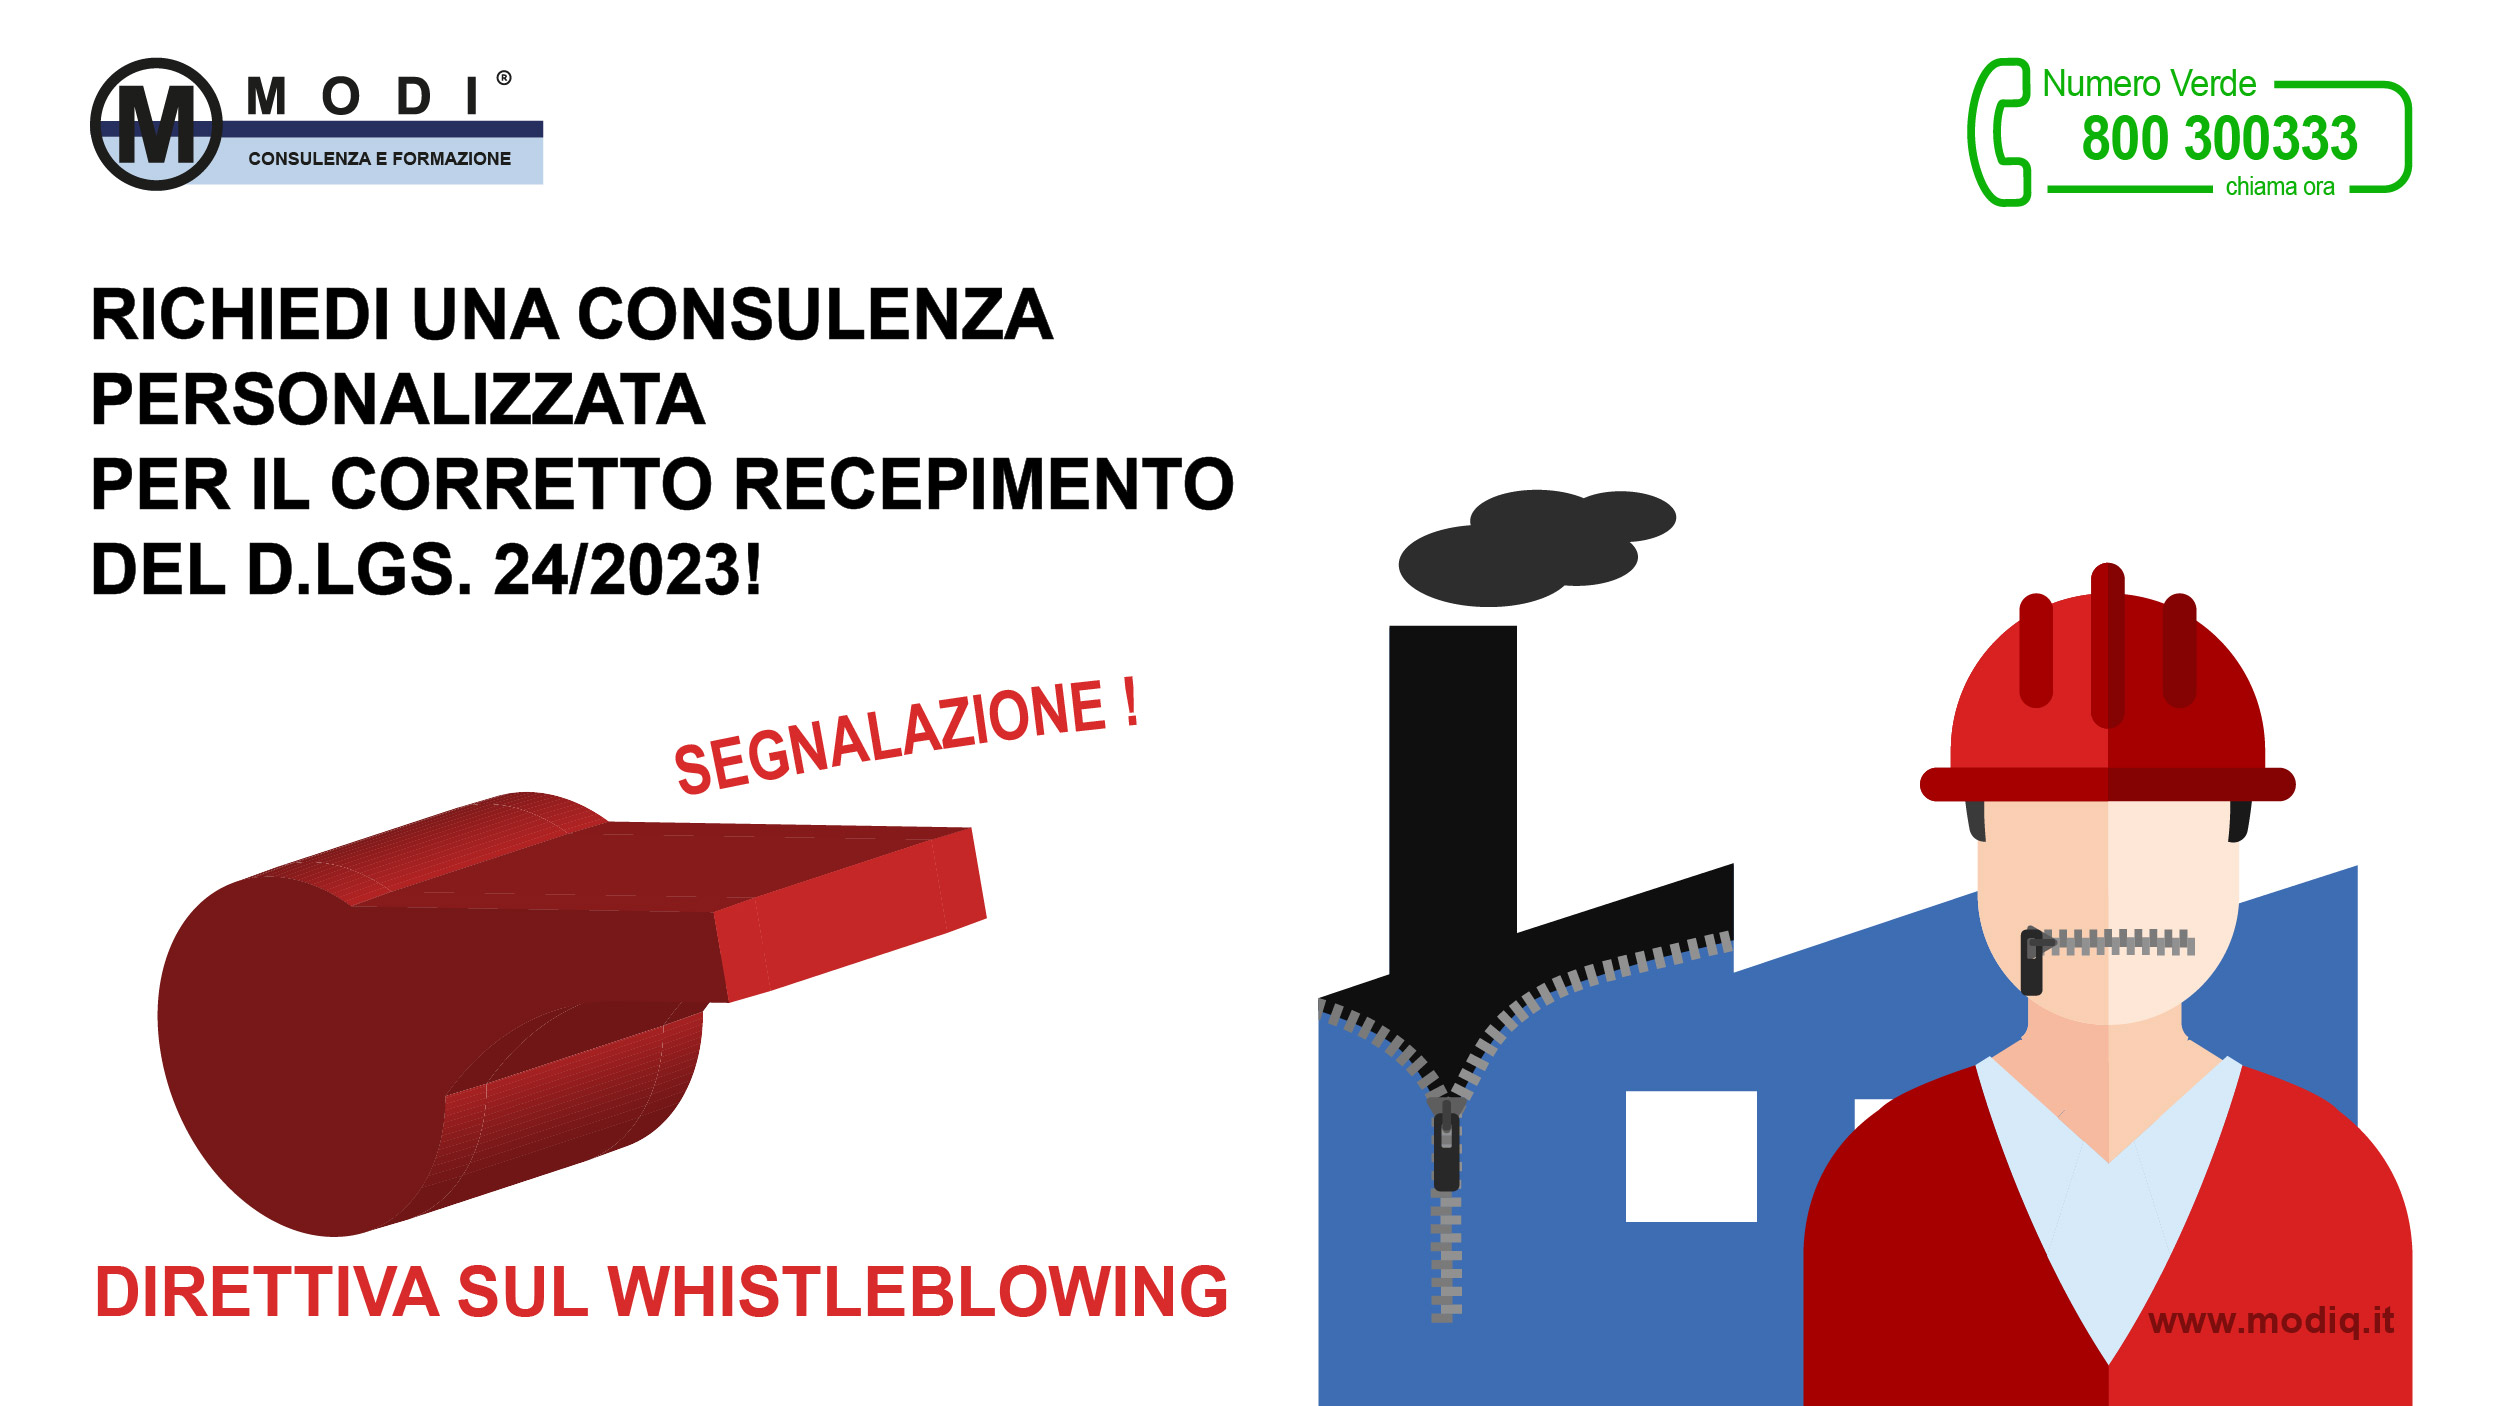 Il D.lgs.24/23 Whistleblowing, entrato in vigore il 30/03/23 il impone alle imprese con più di 50 dipendenti o dotate di Modelli Organizzativi 231 le disposizioni obbligatorie per la protezione delle persone che segnalano violazioni delle normative nazionali o dell’UE